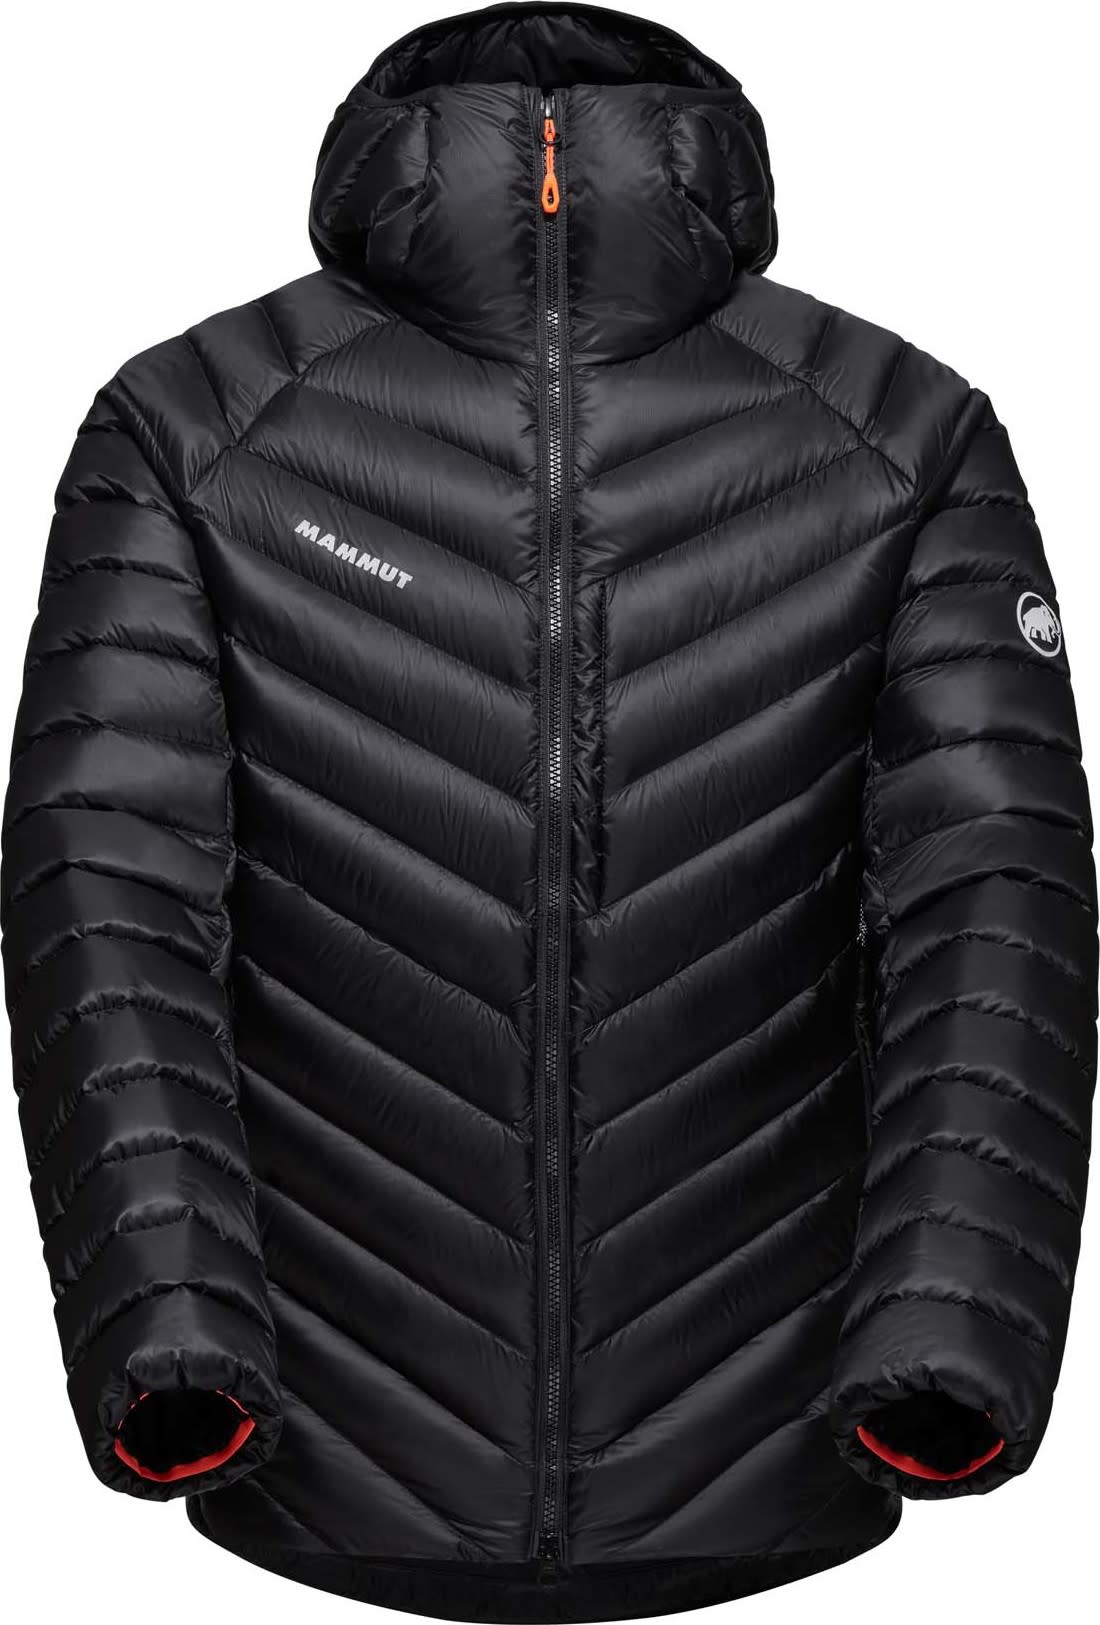 Men's Broad Peak IN Hooded Jacket black